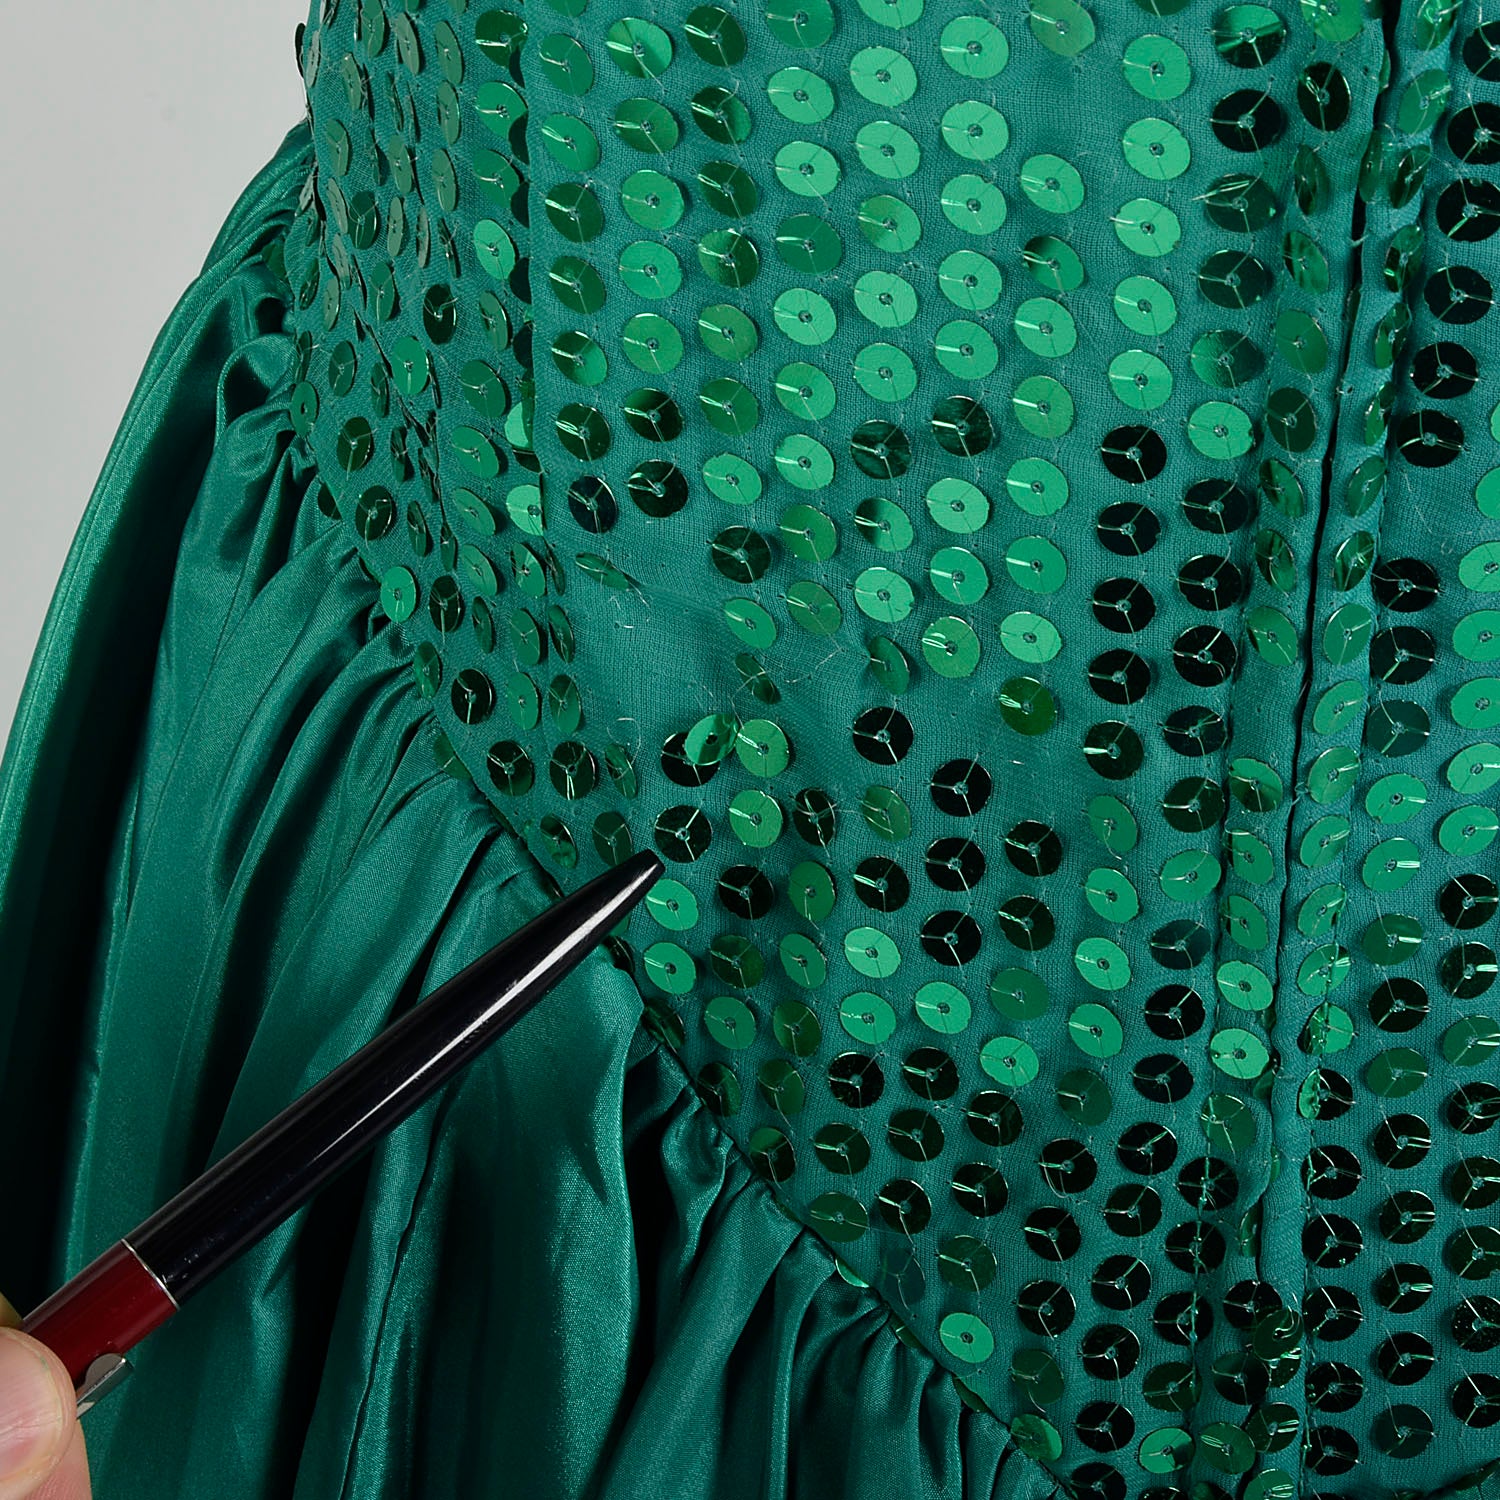 Medium 1980s Sequin Peplum Prom Dress Green Silver Hi-Low Hem Mini Pencil Skirt